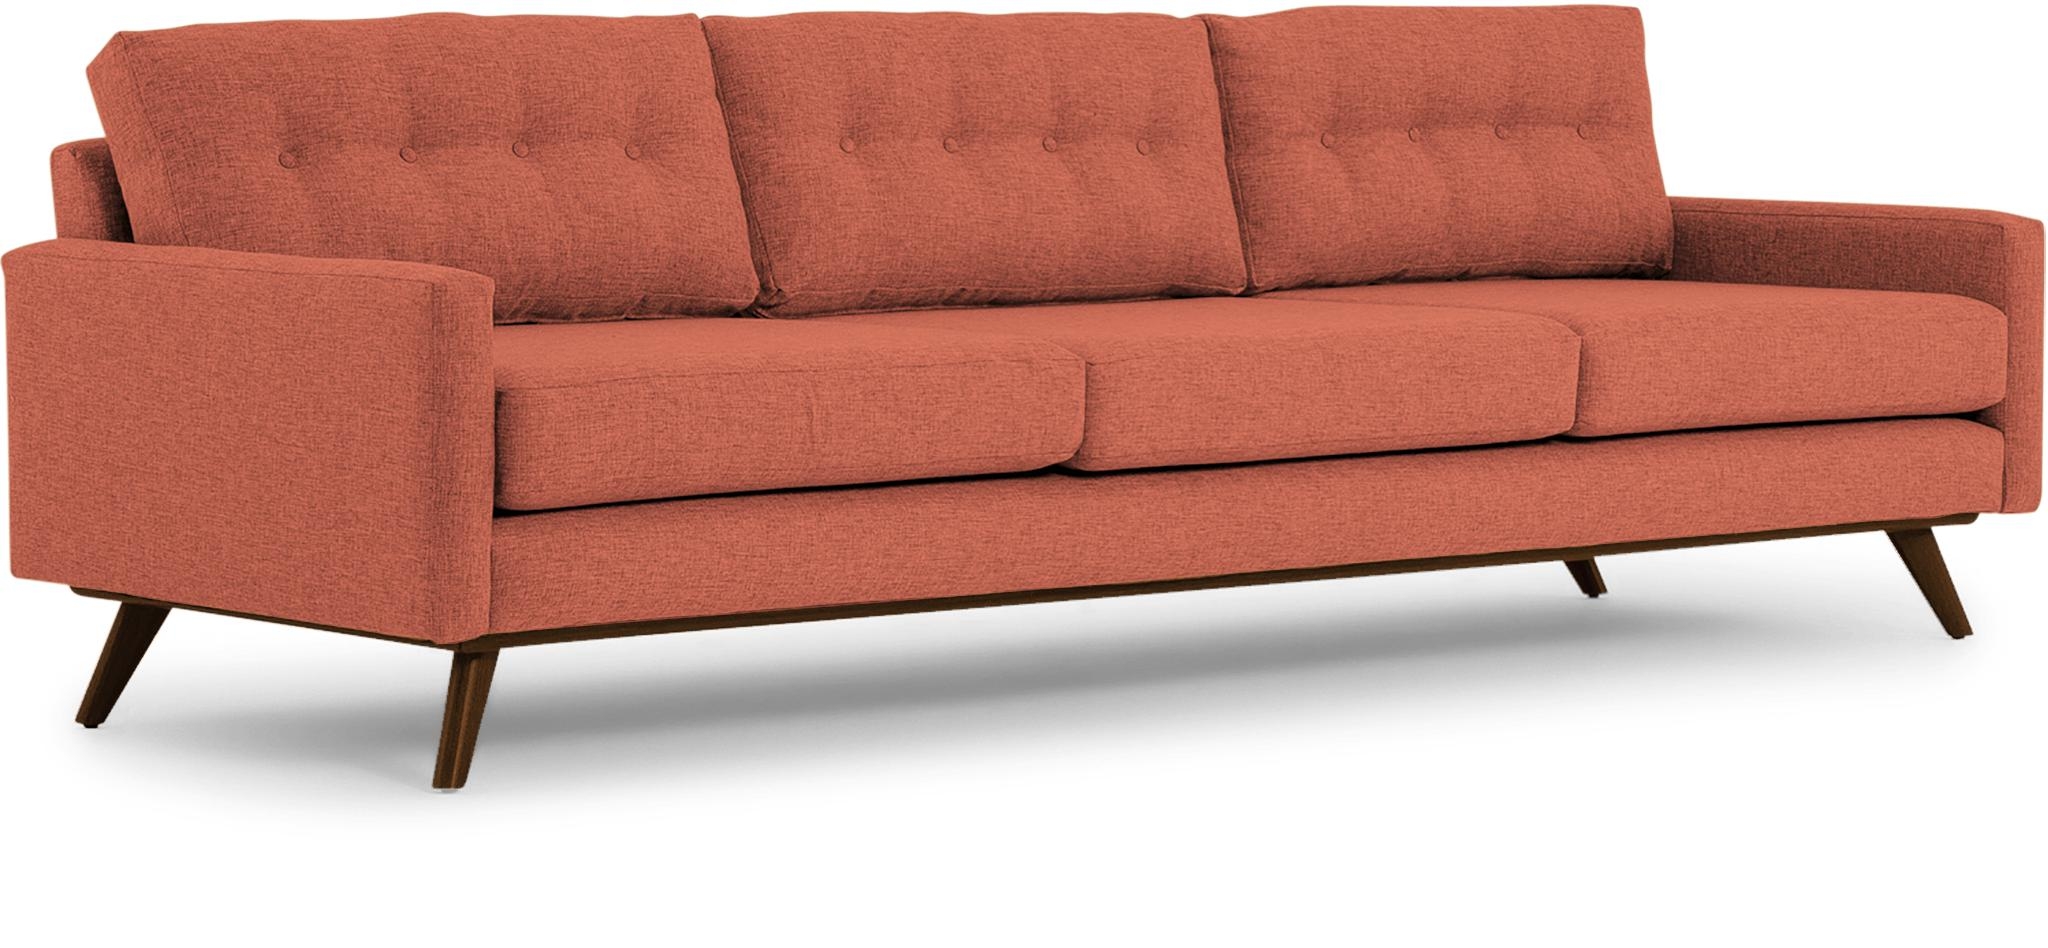 Orange Hopson Mid Century Modern Grand Sofa - Key Largo Coral - Mocha - Image 1